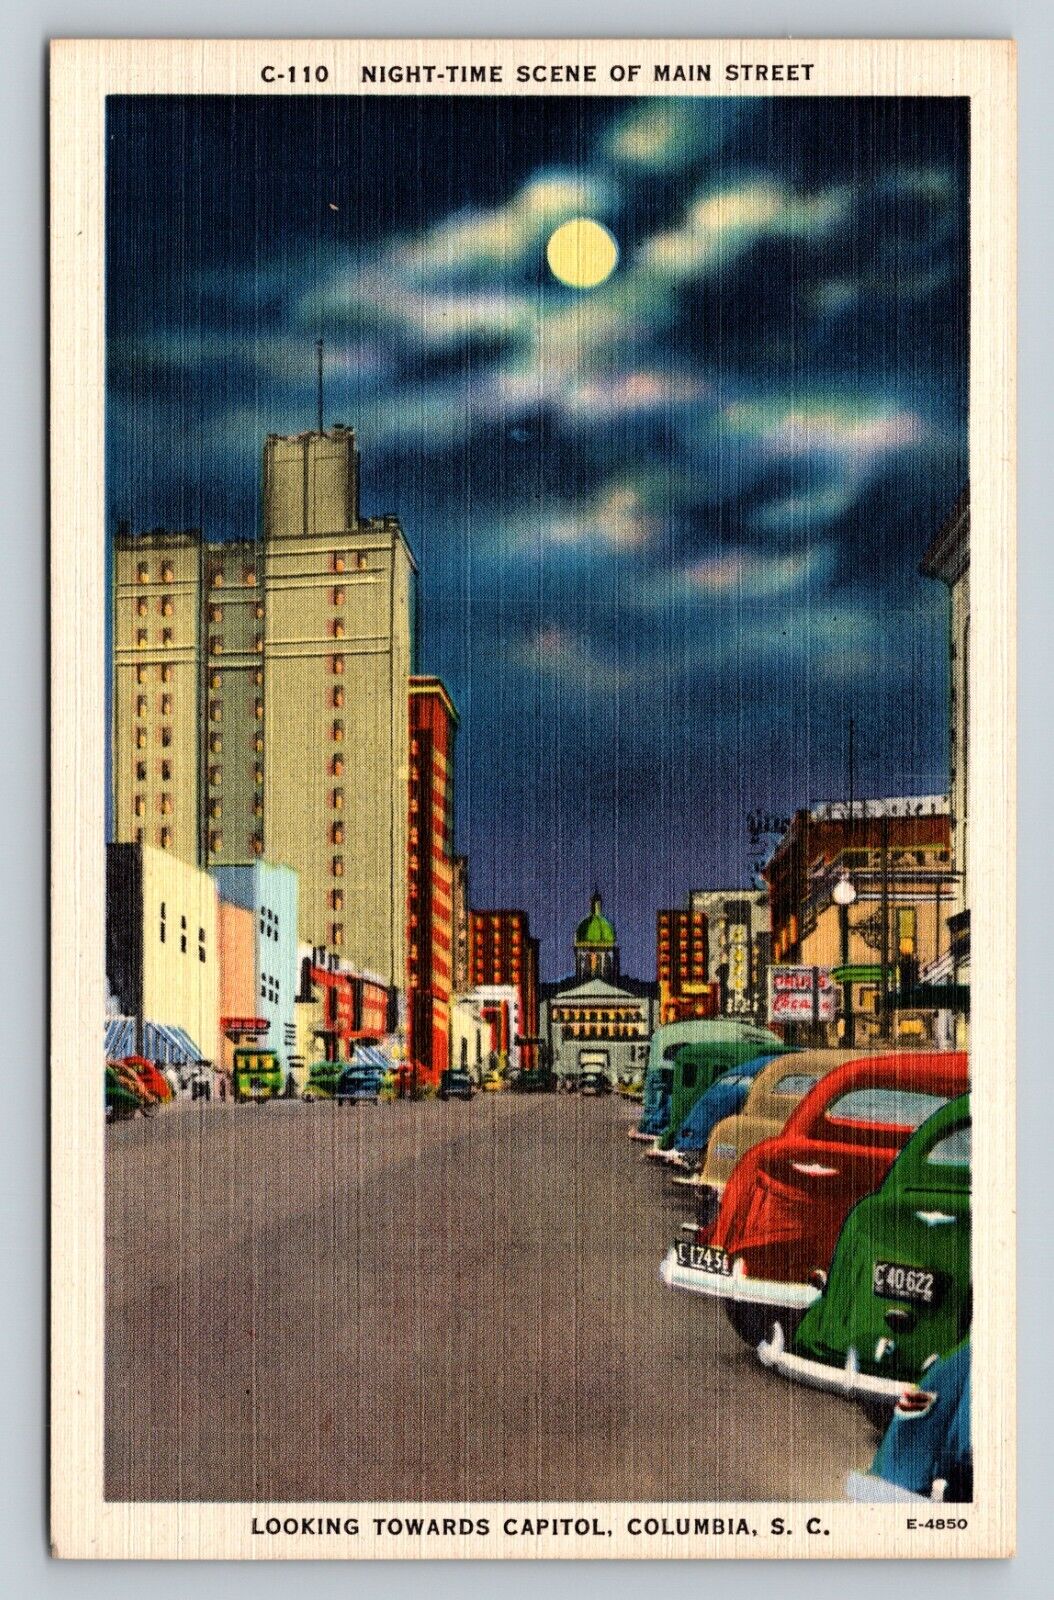 Columbia South Carolina SC Nighttime Main Street Facing Capitol VINTAGE Postcard